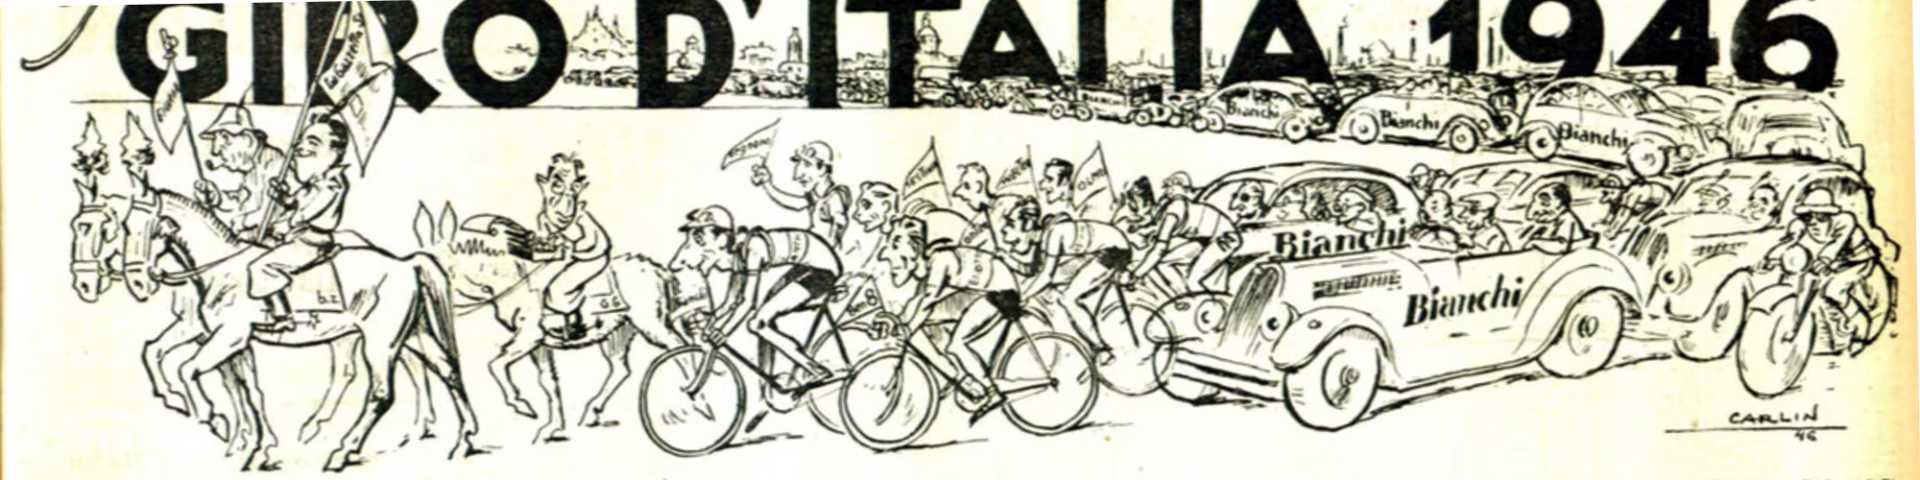 О бициклизму и национализму: Дан када су Југословени каменовали Ђиро д'Италија